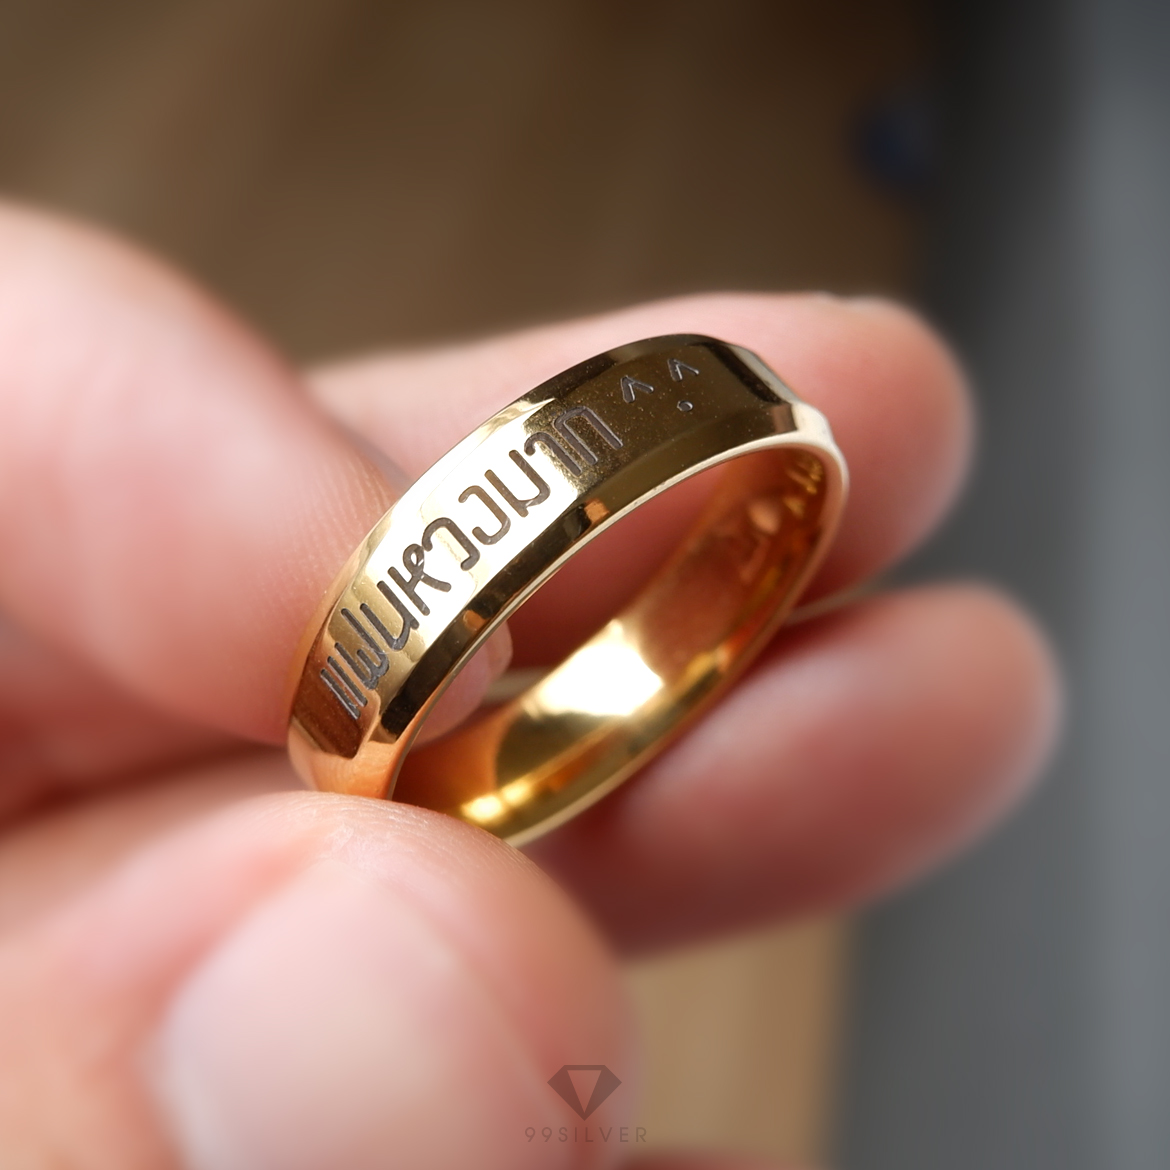 แหวนสแตนเลสแท้หน้ากว้าง 6 มิลลิเมตร ขอบลดมุมตัดสวยงาม ตัวเรือนสีทองเงา